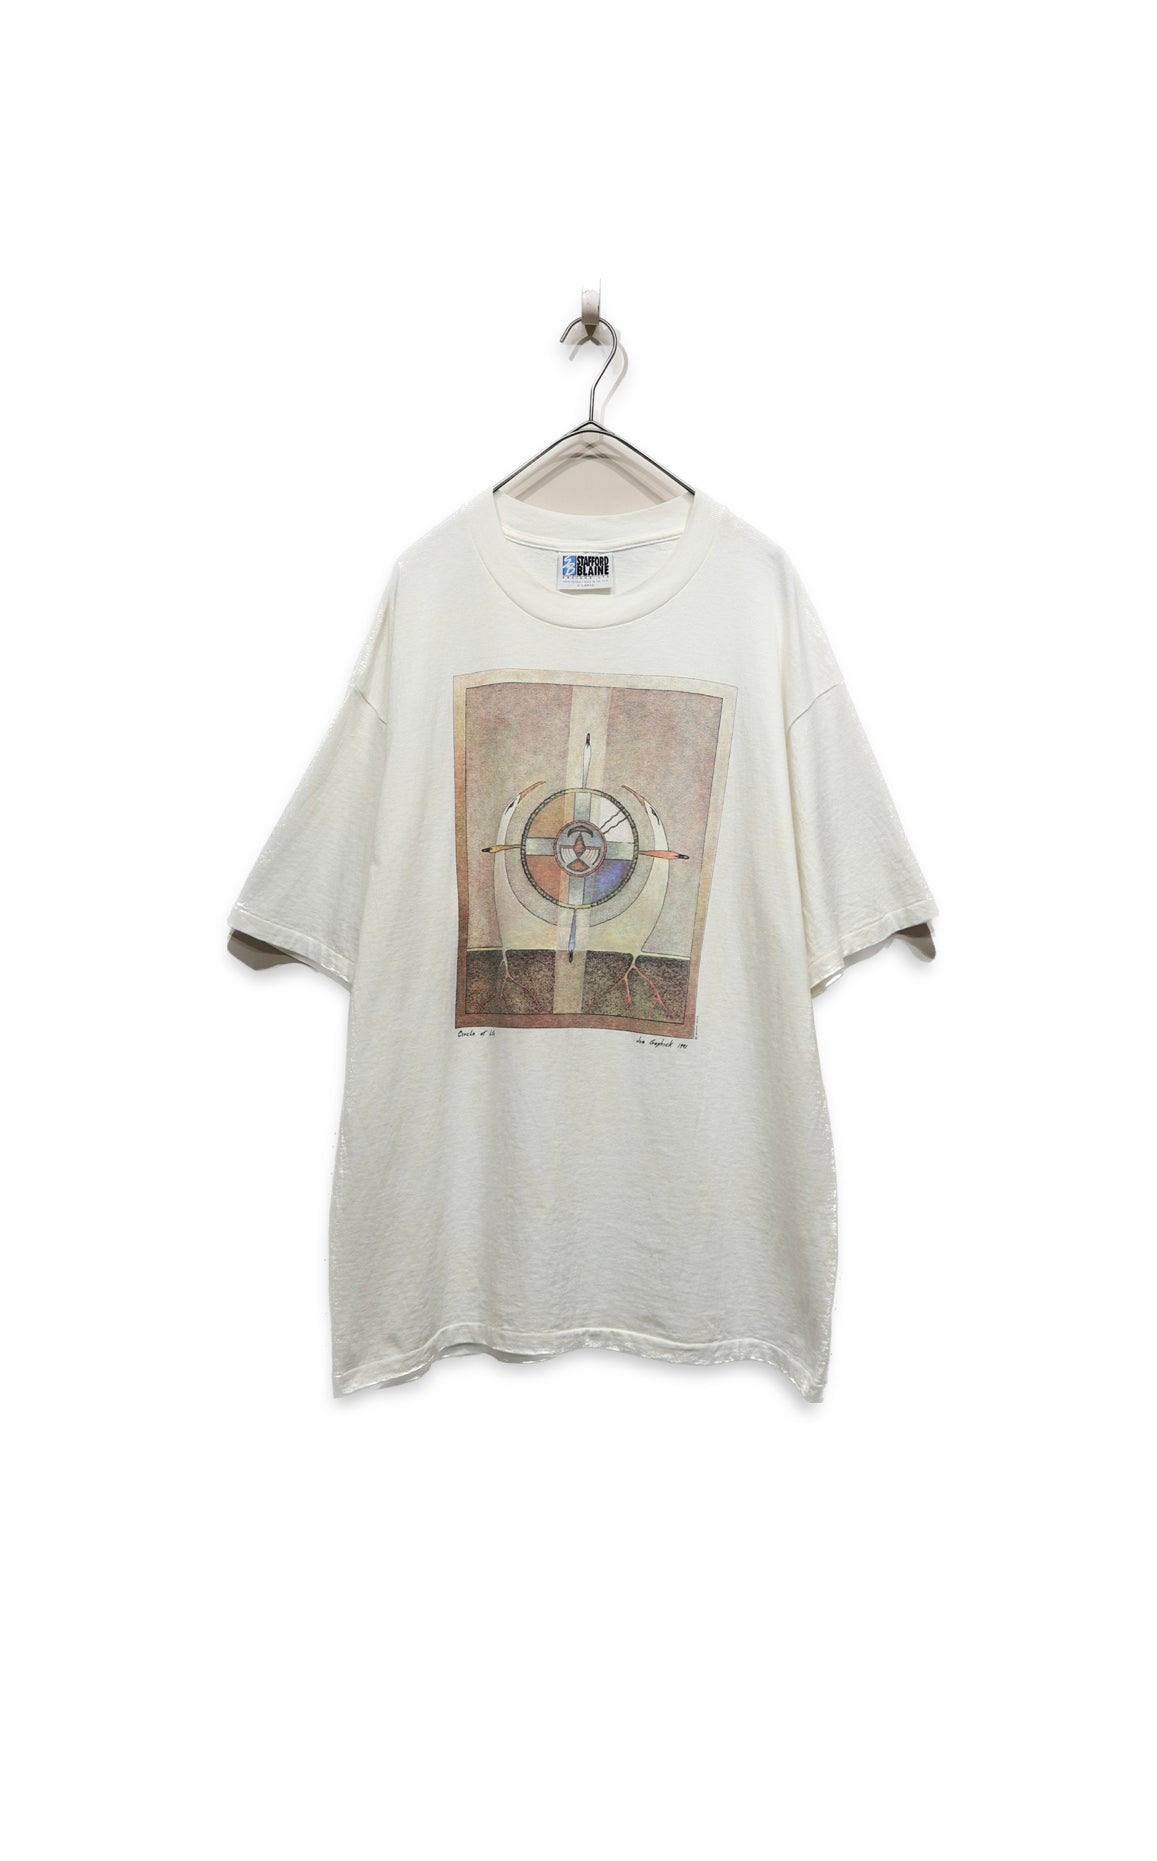 90’s print t-shirt